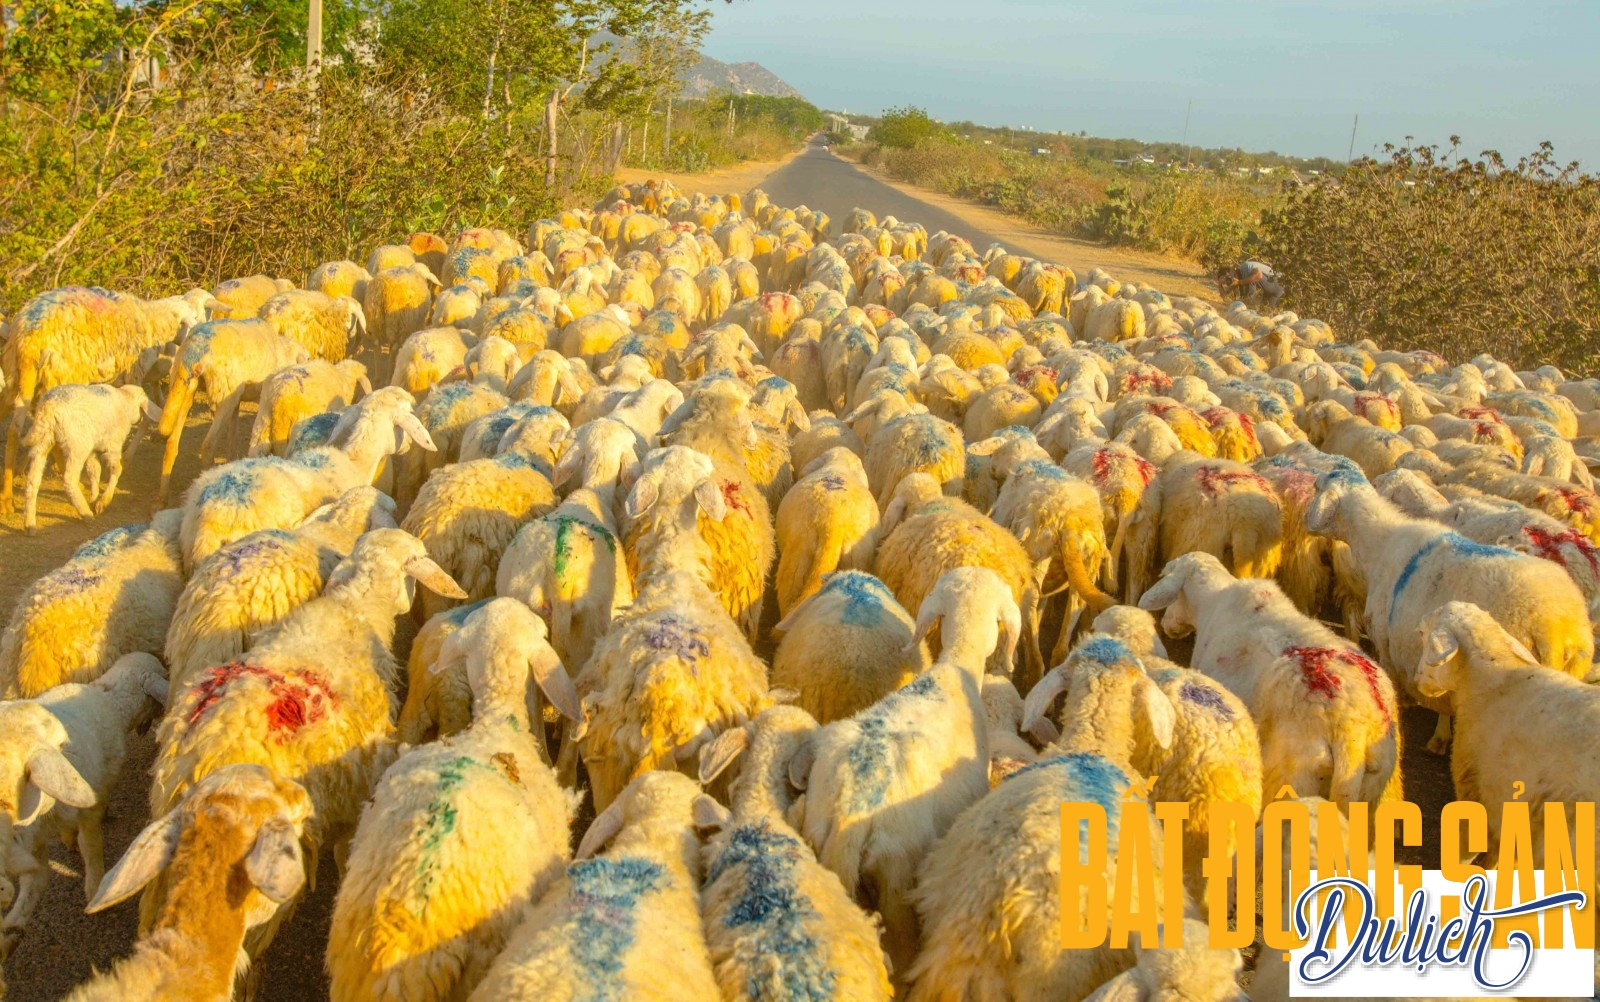 Quãng đường từ thành phố Phan Rang ra tới đồng cừu An Hoà khoảng gần 20km và nằm trên Quốc lộ 1A nên bạn dễ gặp những đàn cừu có số lượng đến cả ngàn con lững thững đi trước mũi xe, như trong ảnh.